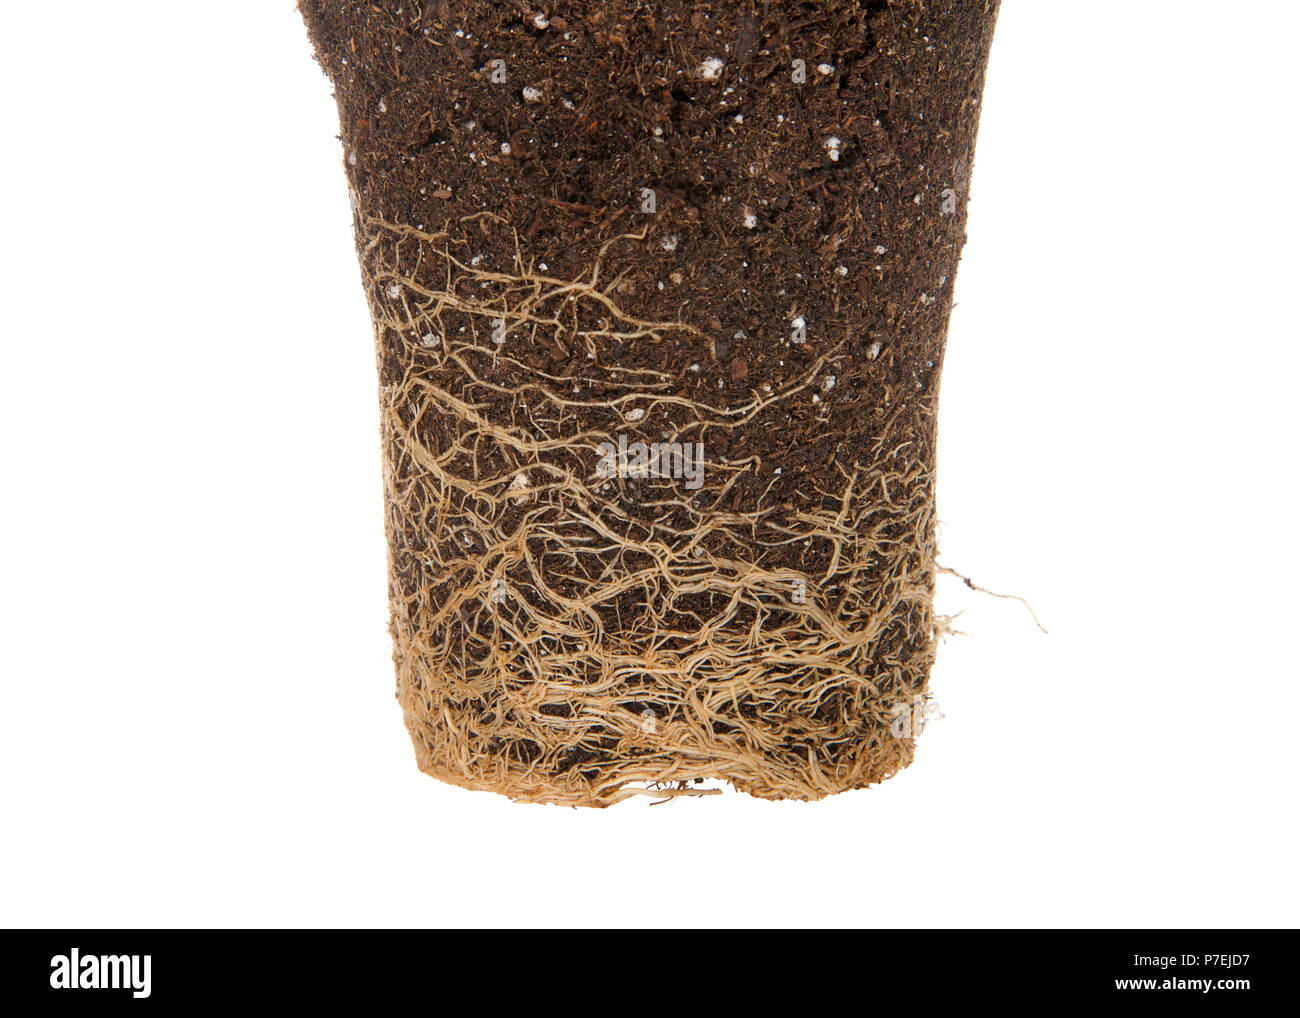 Nahaufnahme auf Rootbound Pflanze aus Topf isoliert auf weißem gezogen.  Wurzel gebunden bezieht sich auf Pflanzen Wurzeln wachsen rund und rund die  Pot, der stoppt Wachstum Stockfotografie - Alamy